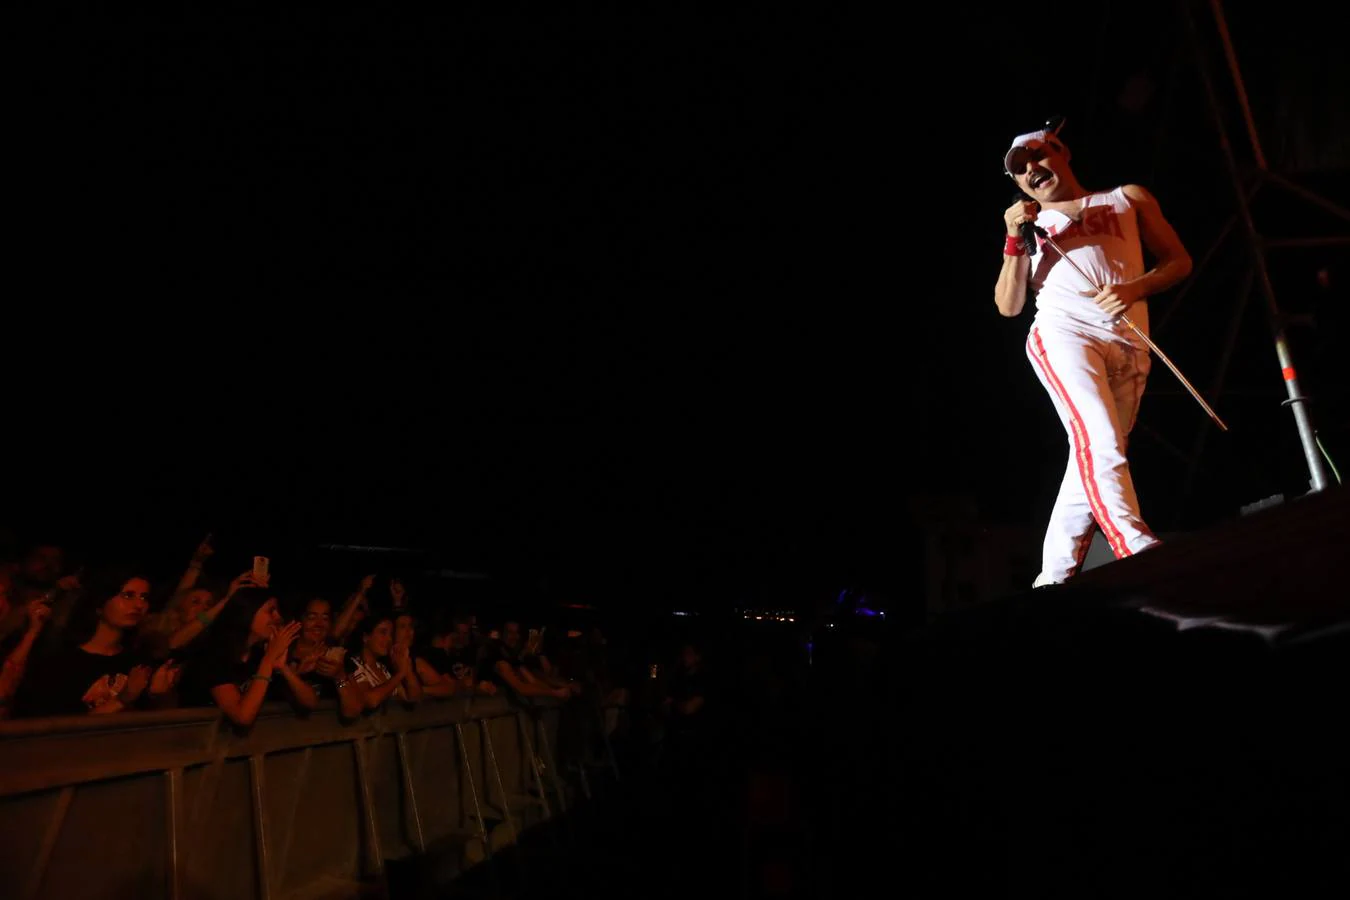 El recinto del ‘Concert Music Festival’ volvió a llenarse para el espectáculo ‘God Save the Queen’.